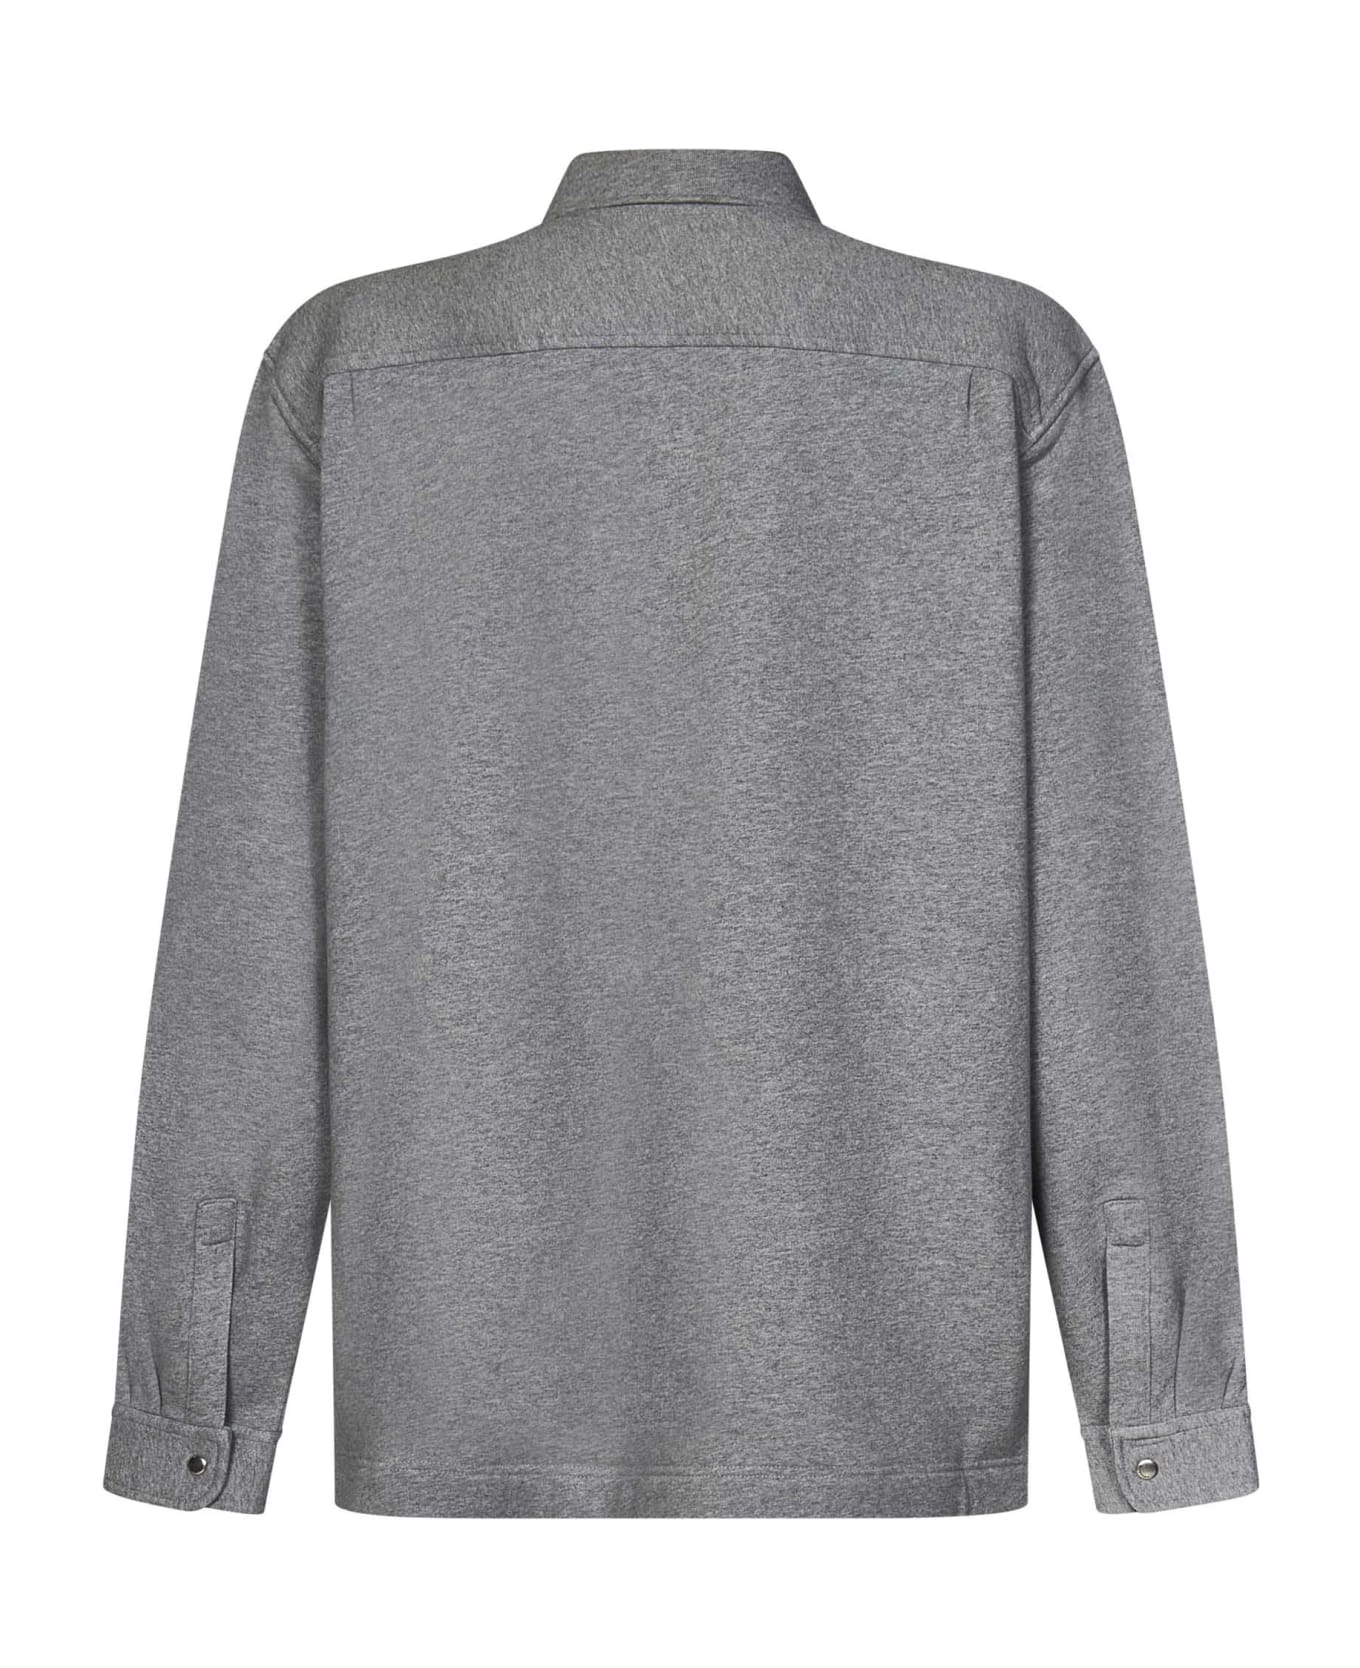 Givenchy Shirt - Grey